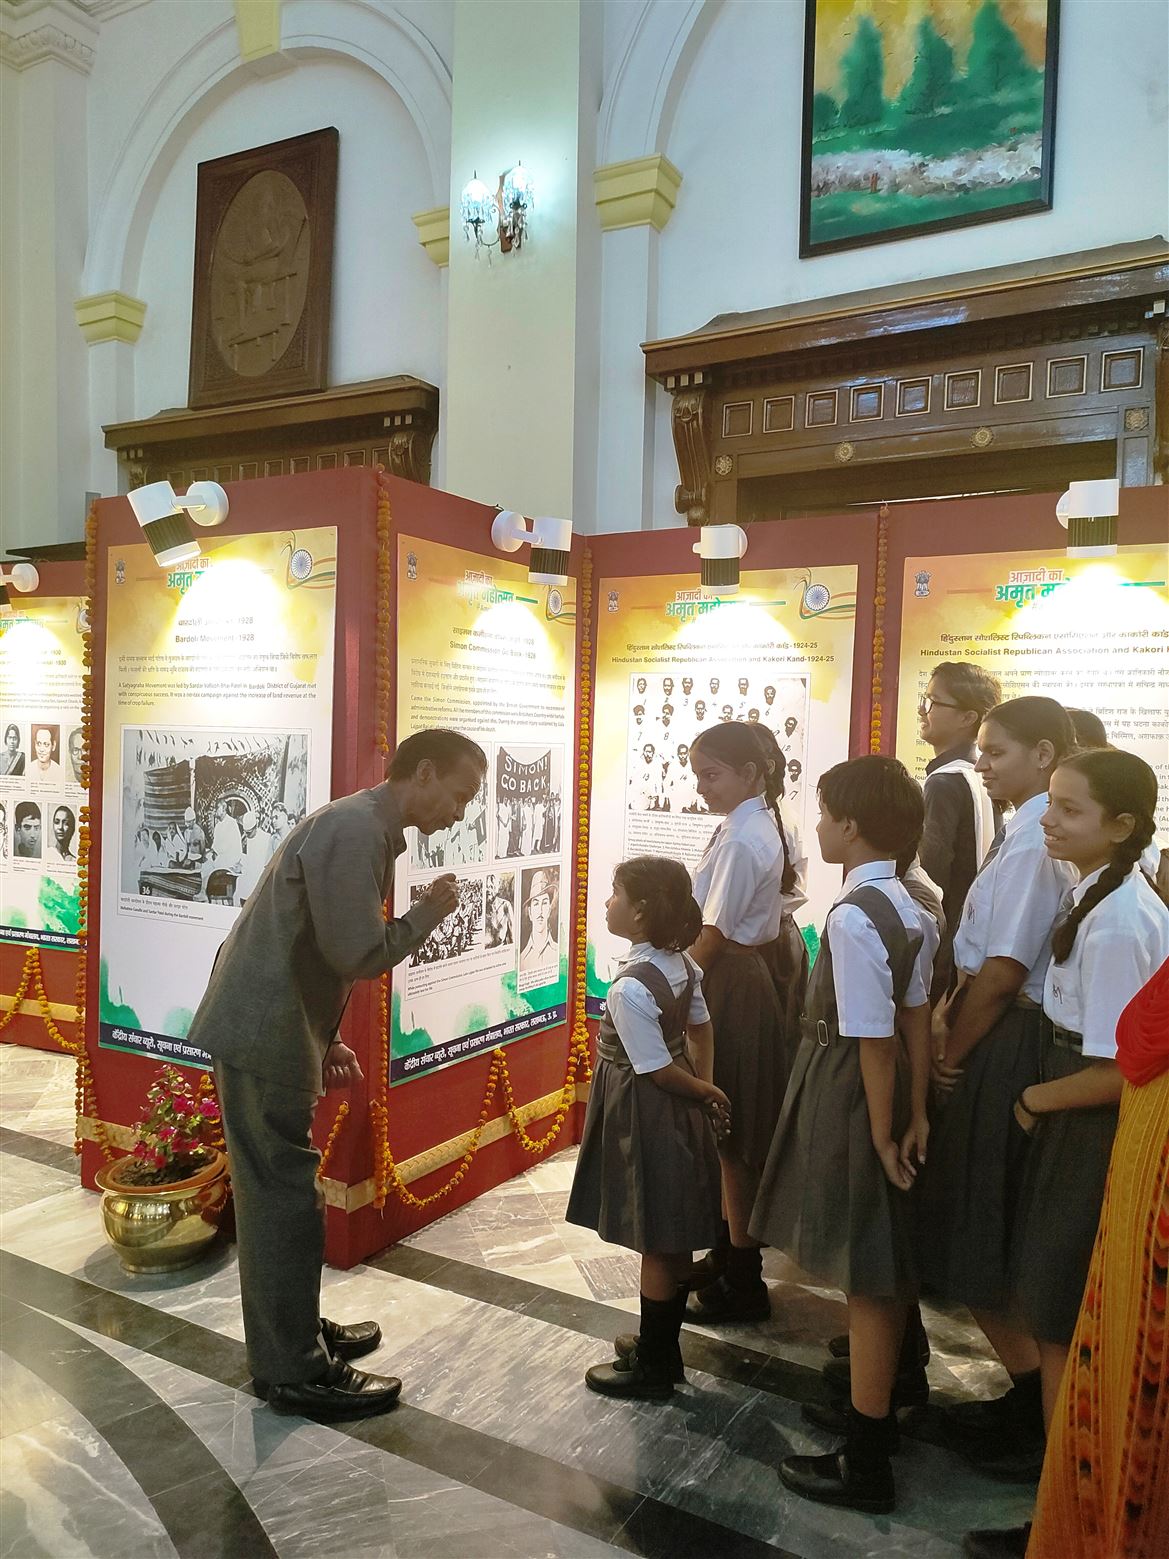 Children got encouraged after attending the events “Mann Ki Baat” and “Azadi Ka Amrit Mahotsav” organized at Raj Bhavan/राजभवन में ‘‘मन की बात‘‘ और आजादी का अमृत महोत्सव पर आयोजित प्रदर्शनी देखकर बच्चों में बढ़ी जिज्ञासा